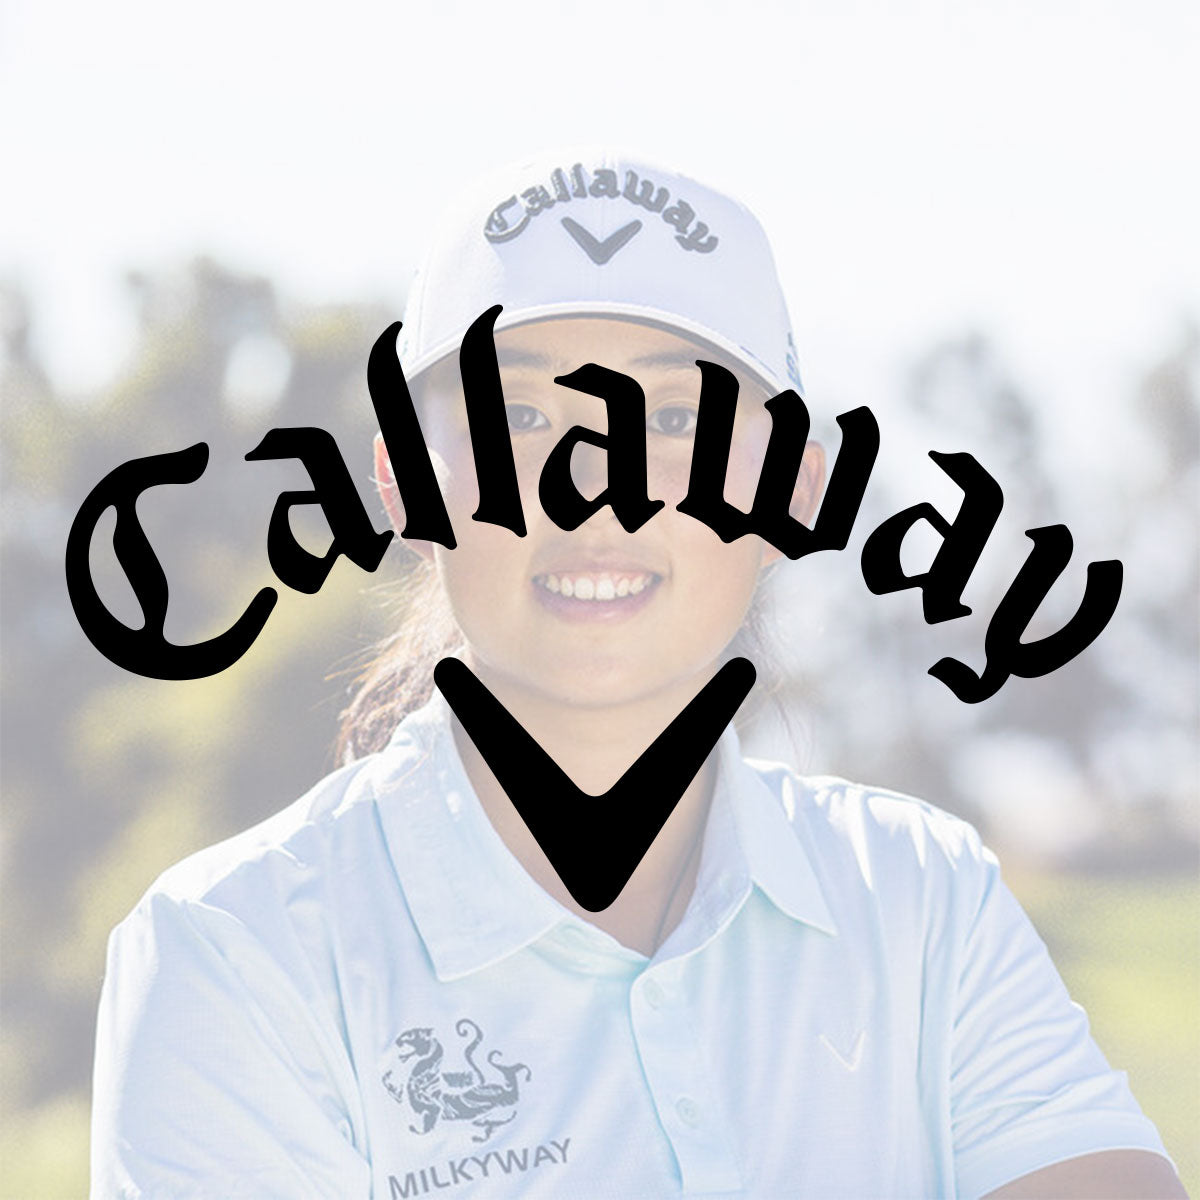 Callaway Golfbälle